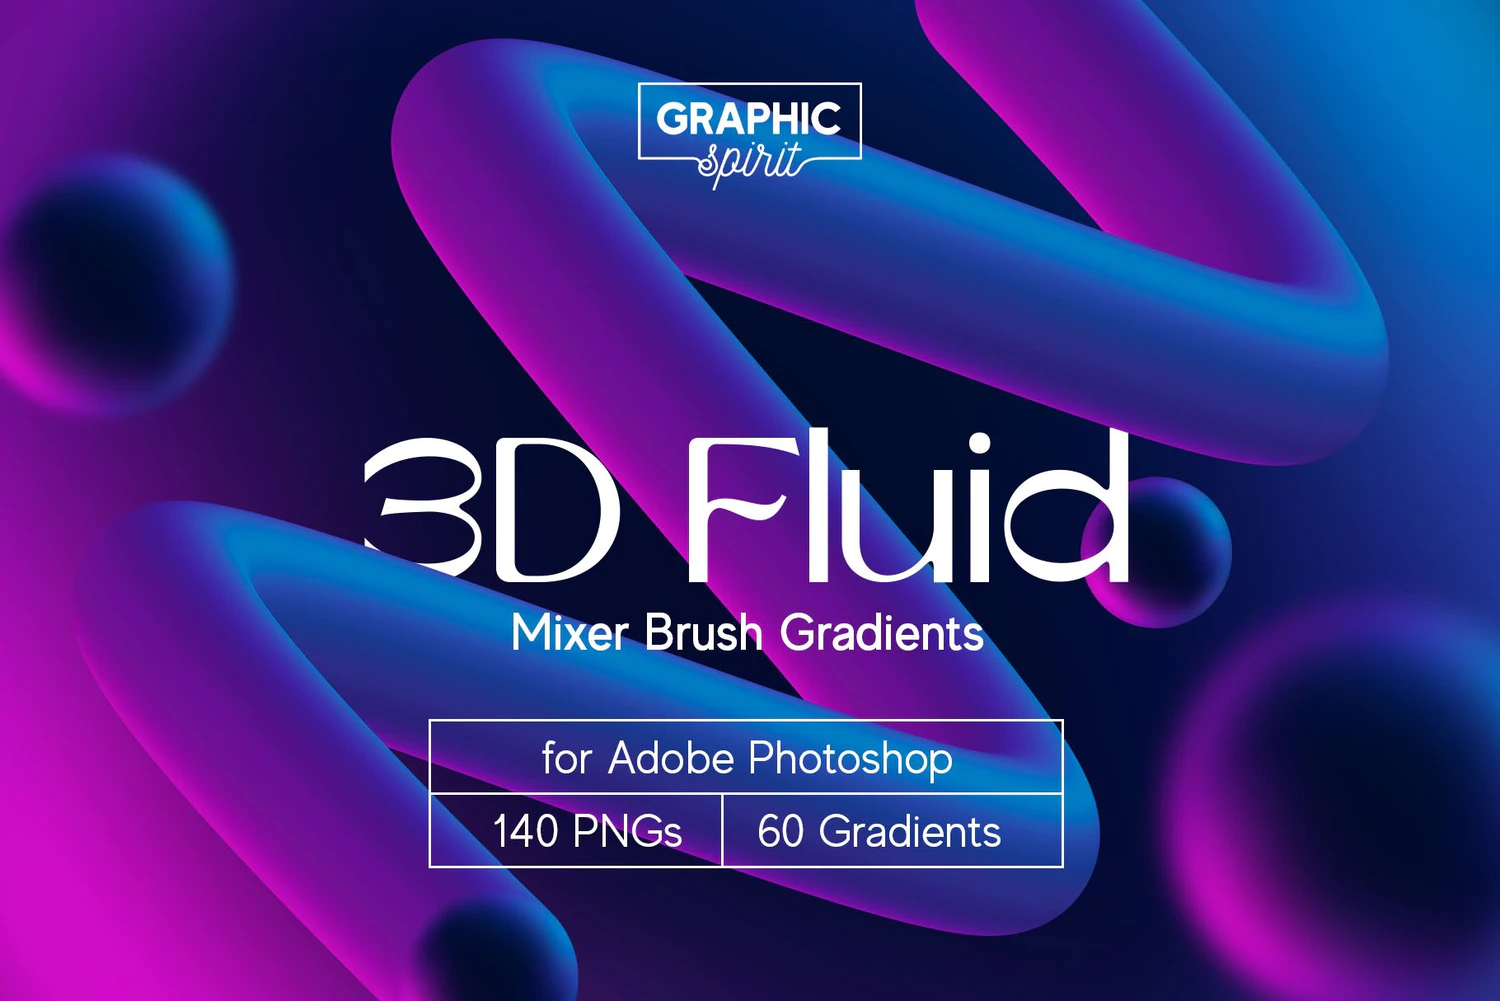 4296 潮流炫彩渐变科技背景图片抽象创意3D图形ps设计素材套装 3D Fluid Mixer Brush Gradients@GOOODME.COM